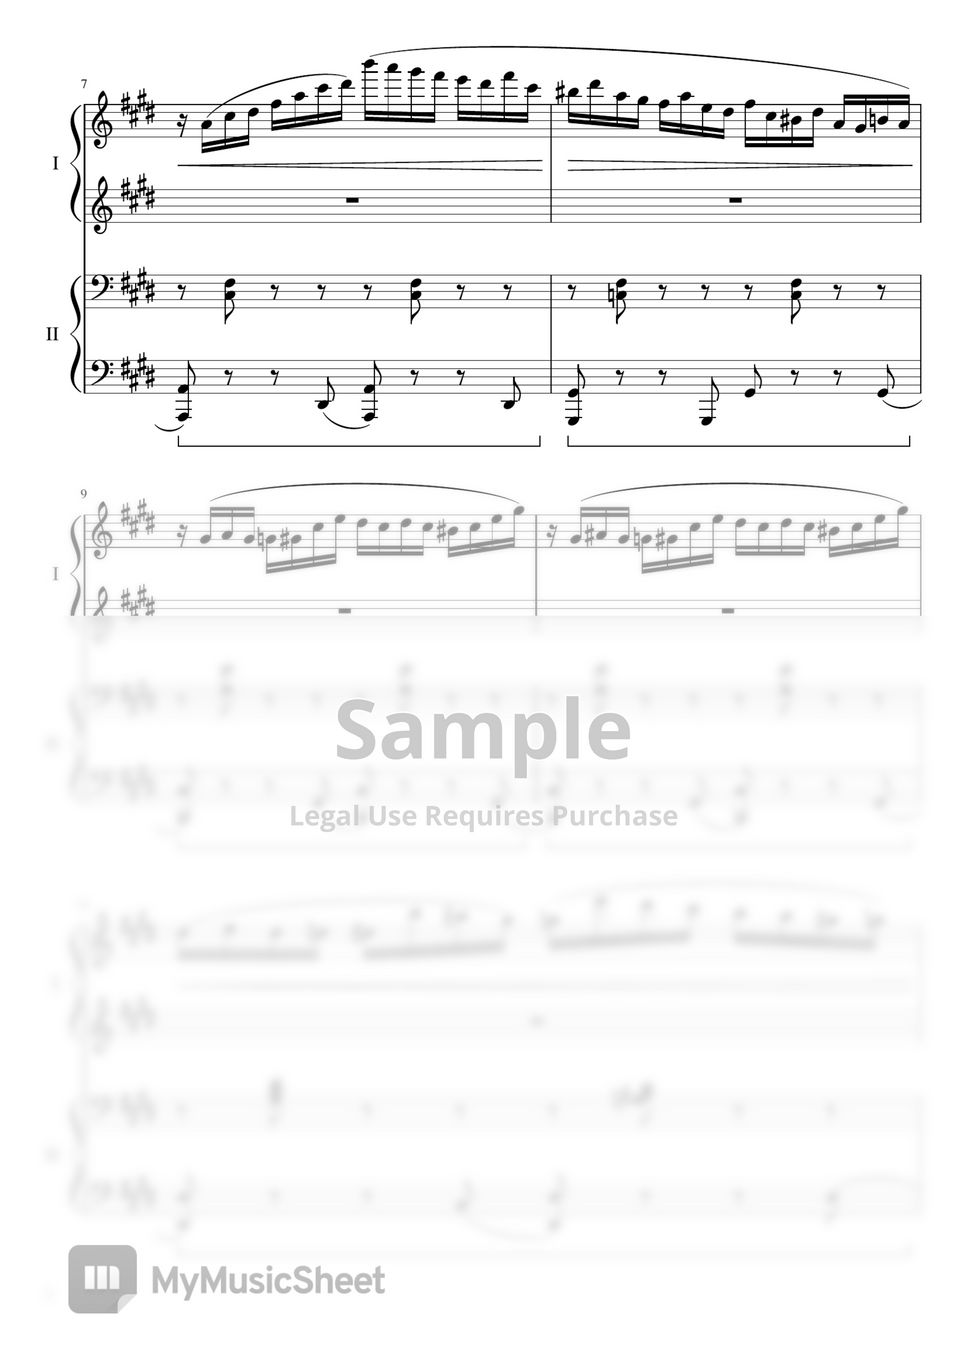 Chopin - Fantasie-Impromtu Op.66 1Piano4Hands (1Piano4Hands) by Choyoungjun